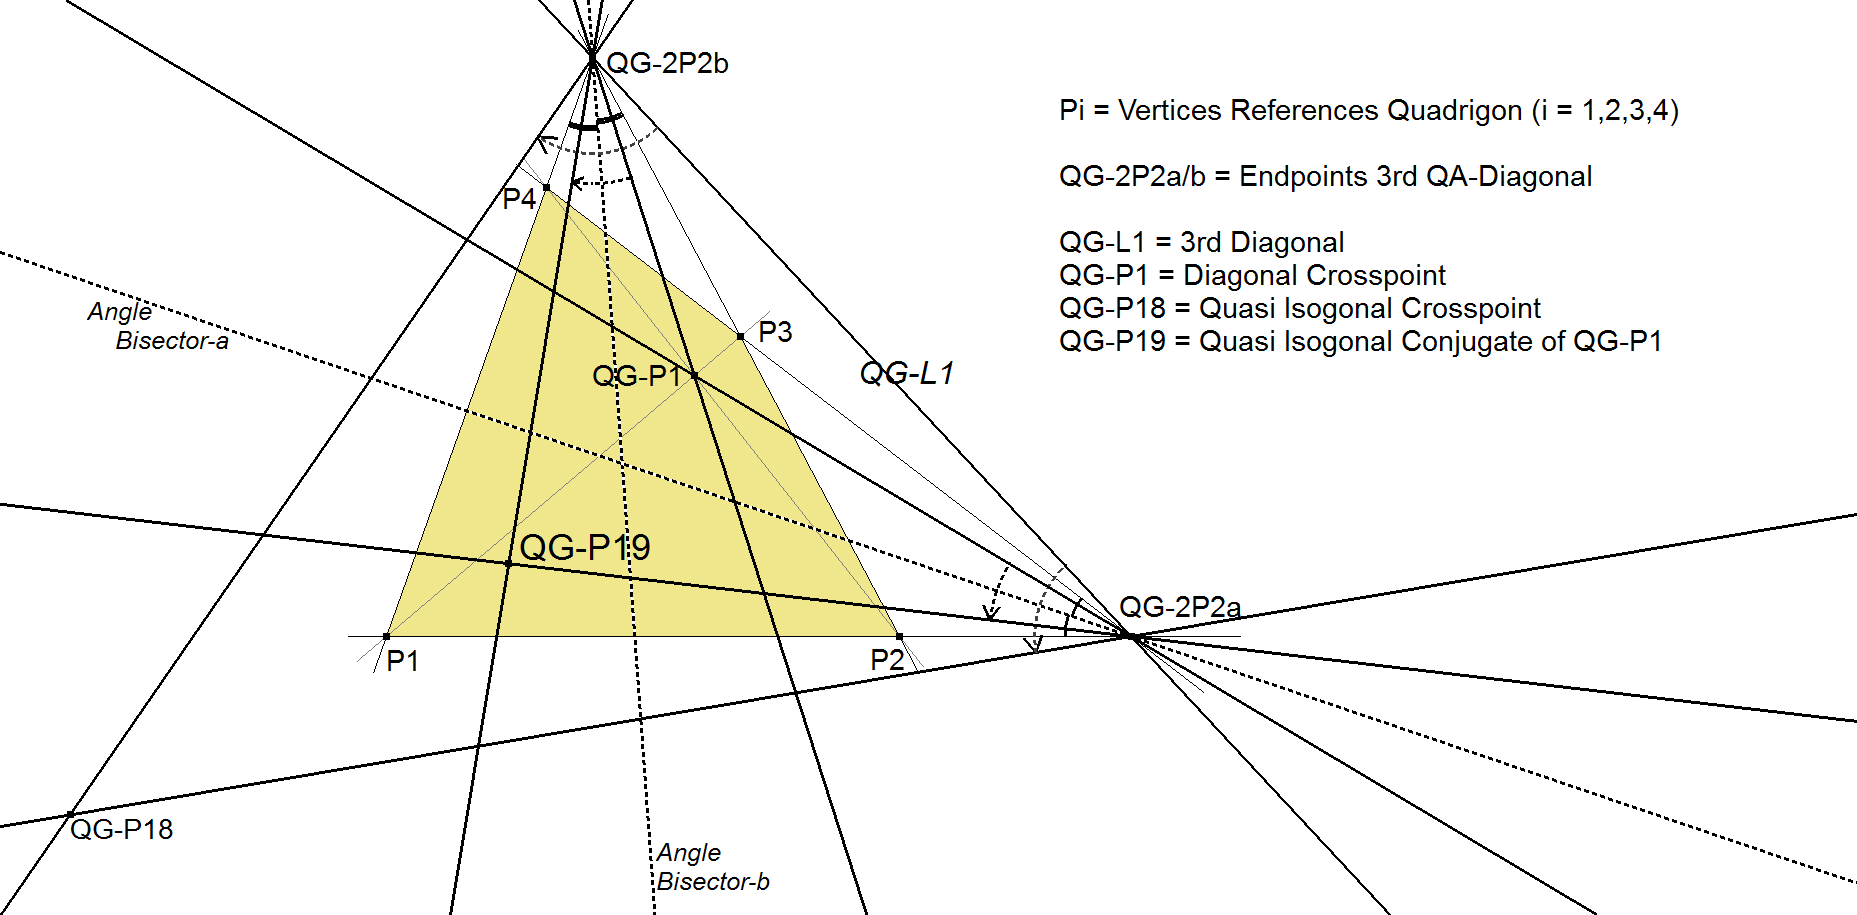 QG-P19-Quasi Isogonal Conjugate QG-P1-01